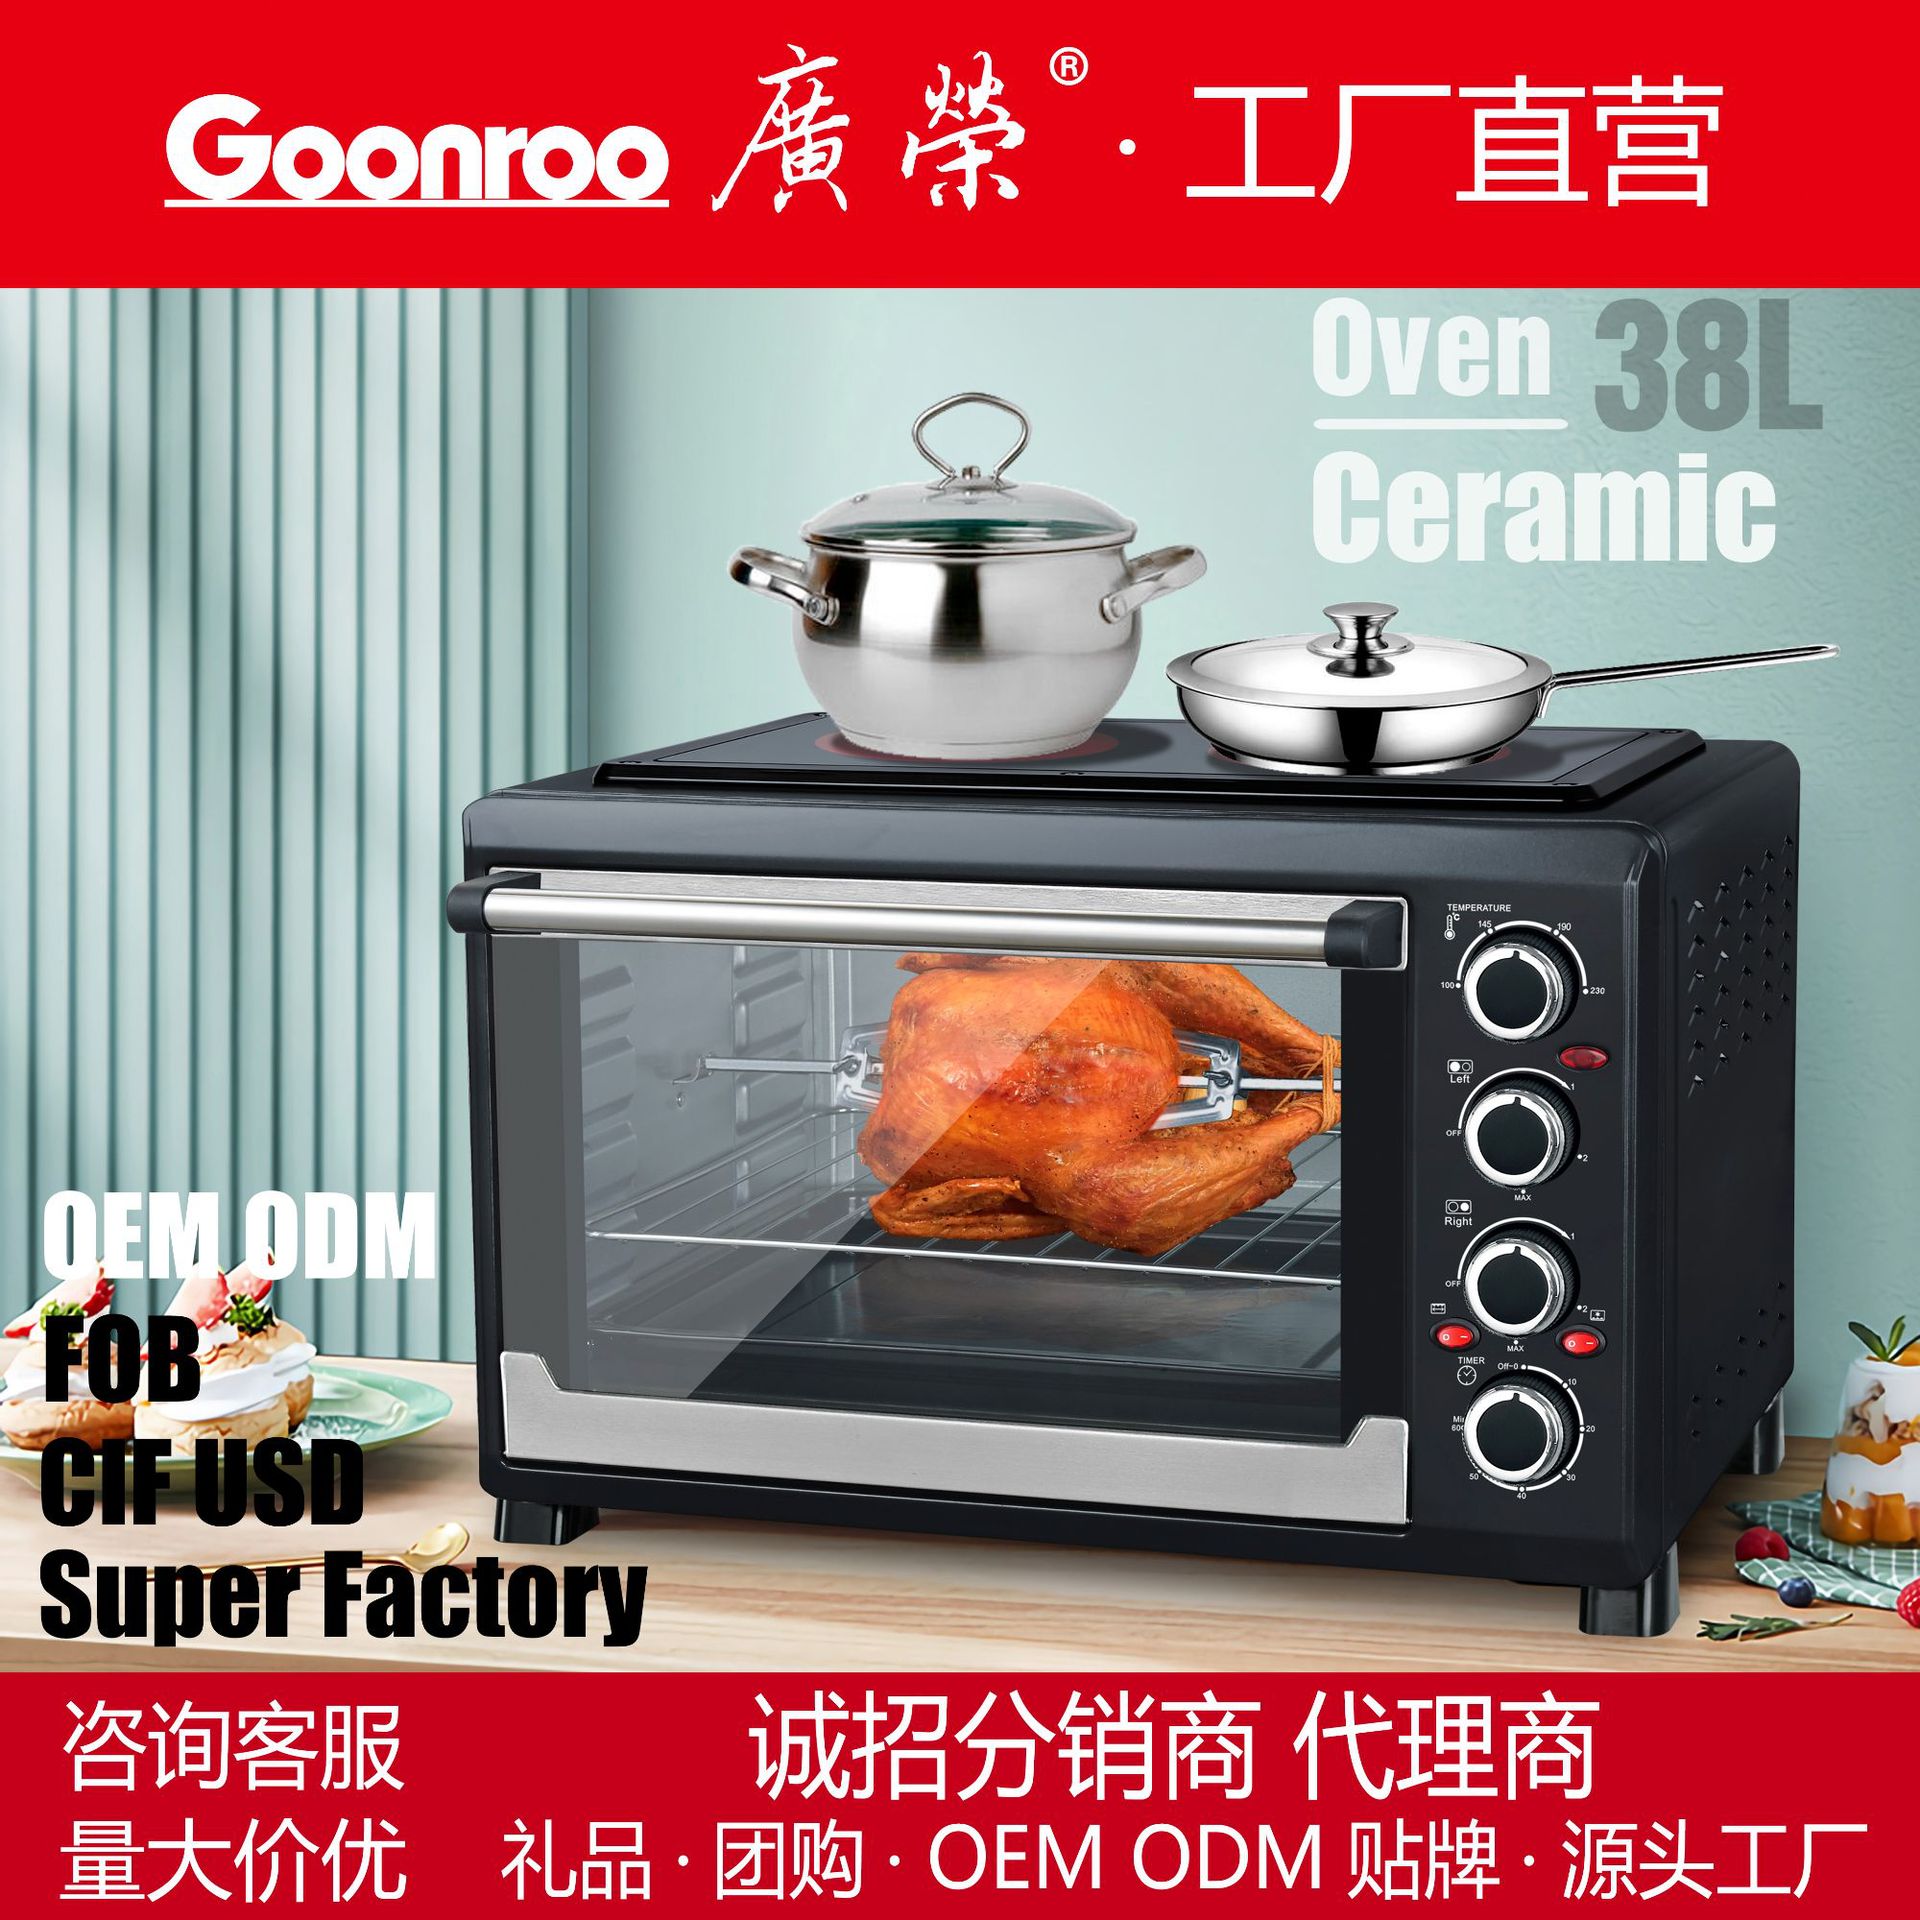 广荣电陶炉烤箱38L家用ceramicoven大容量烘焙电烤箱多功能转叉烤